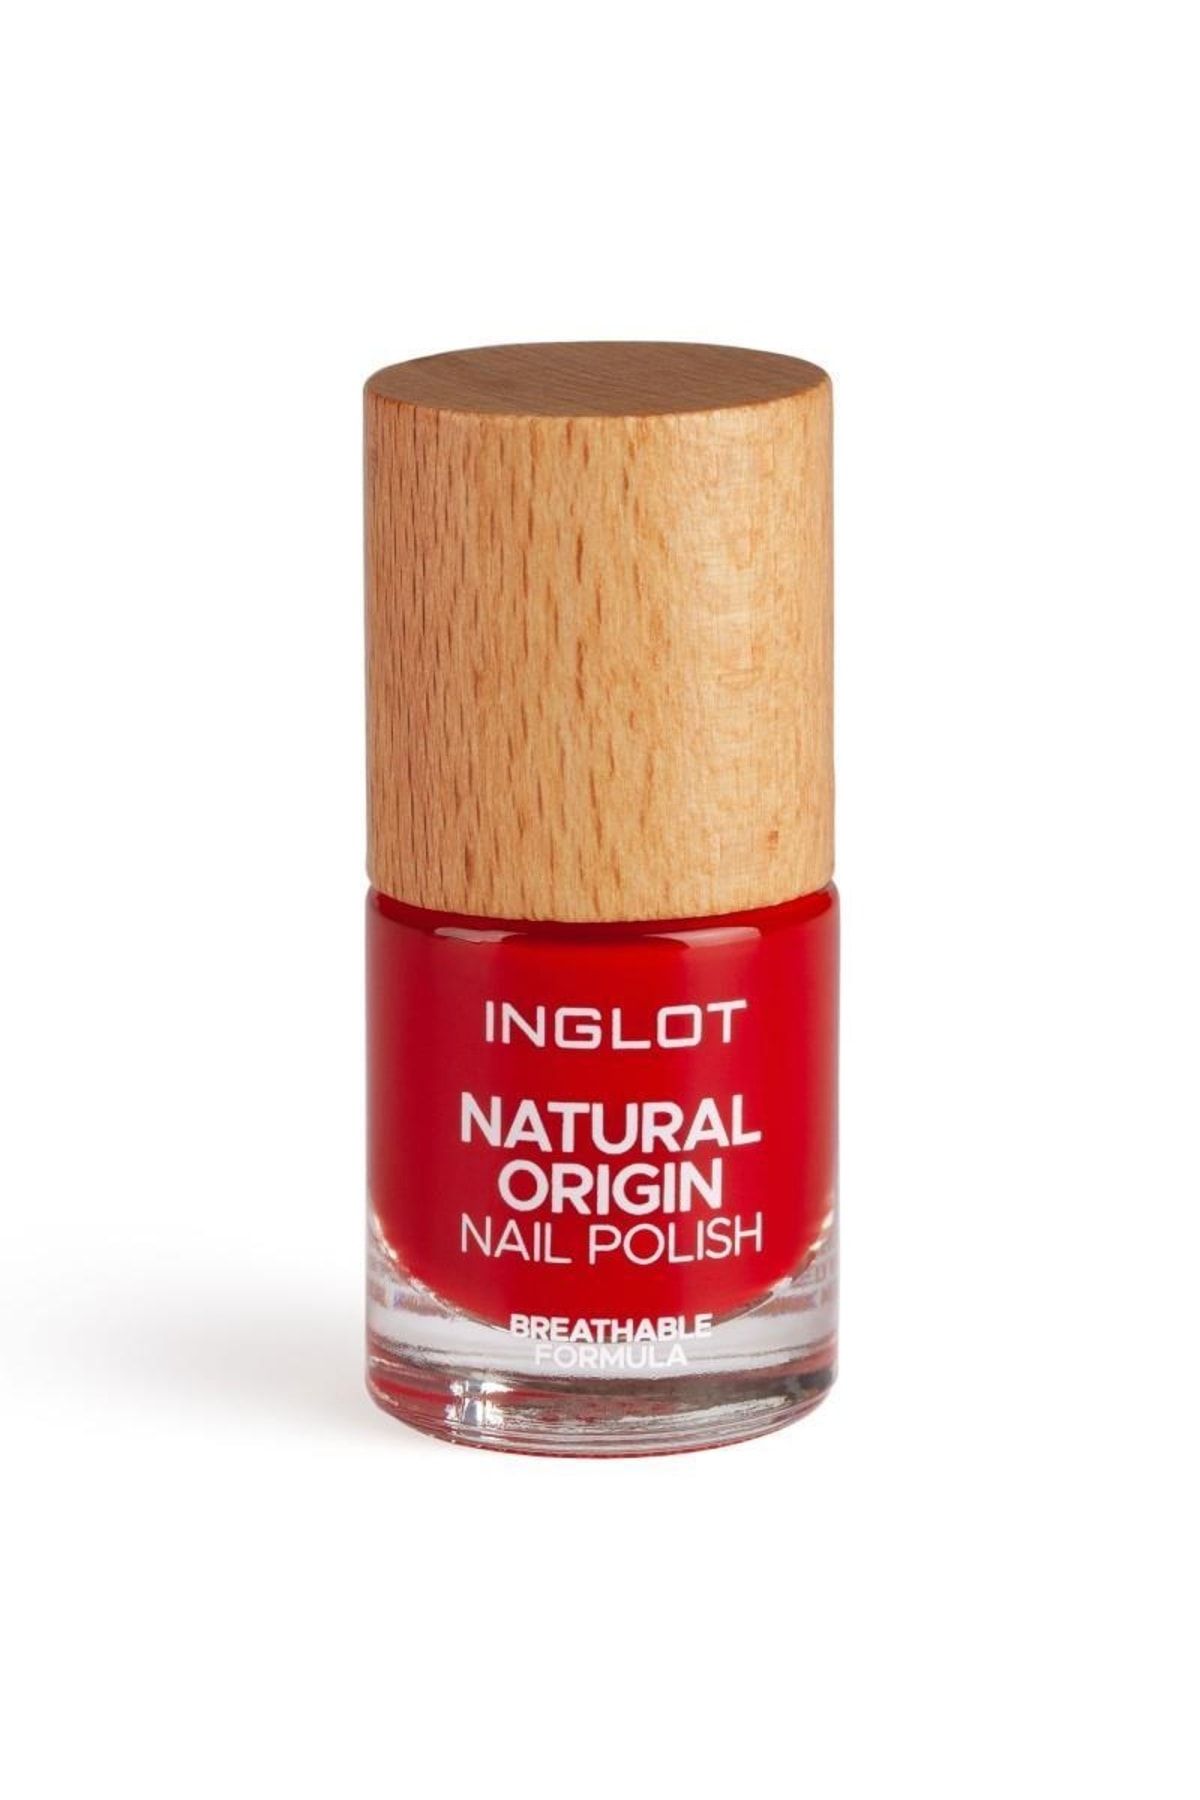 Inglot Natural Origin Nail Polish